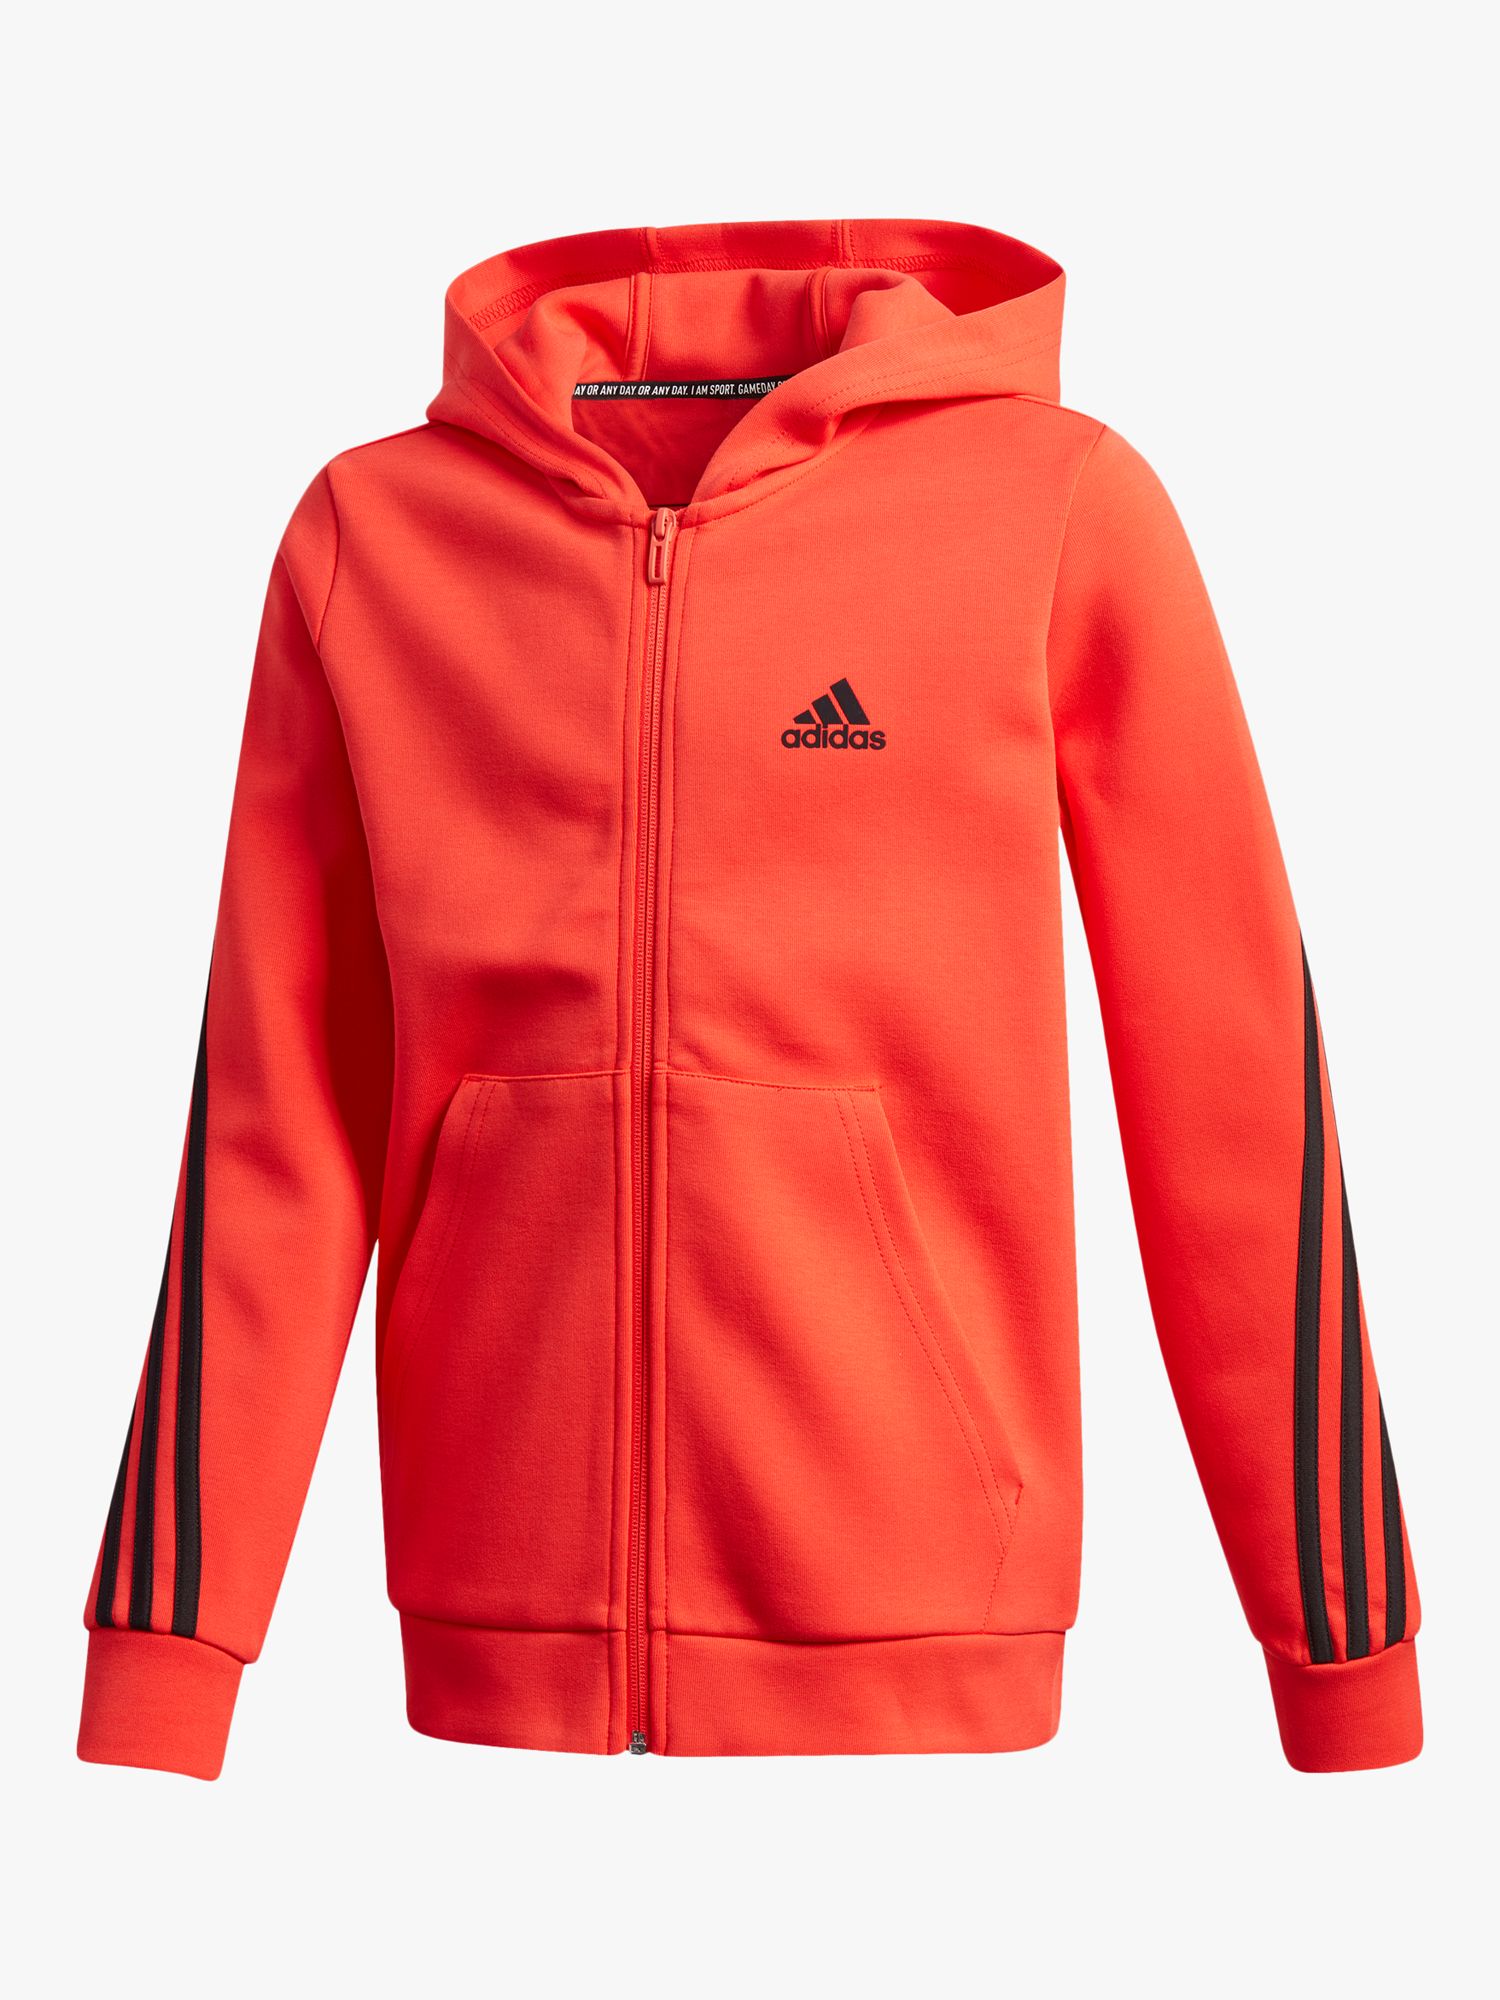 adidas orange zip hoodie